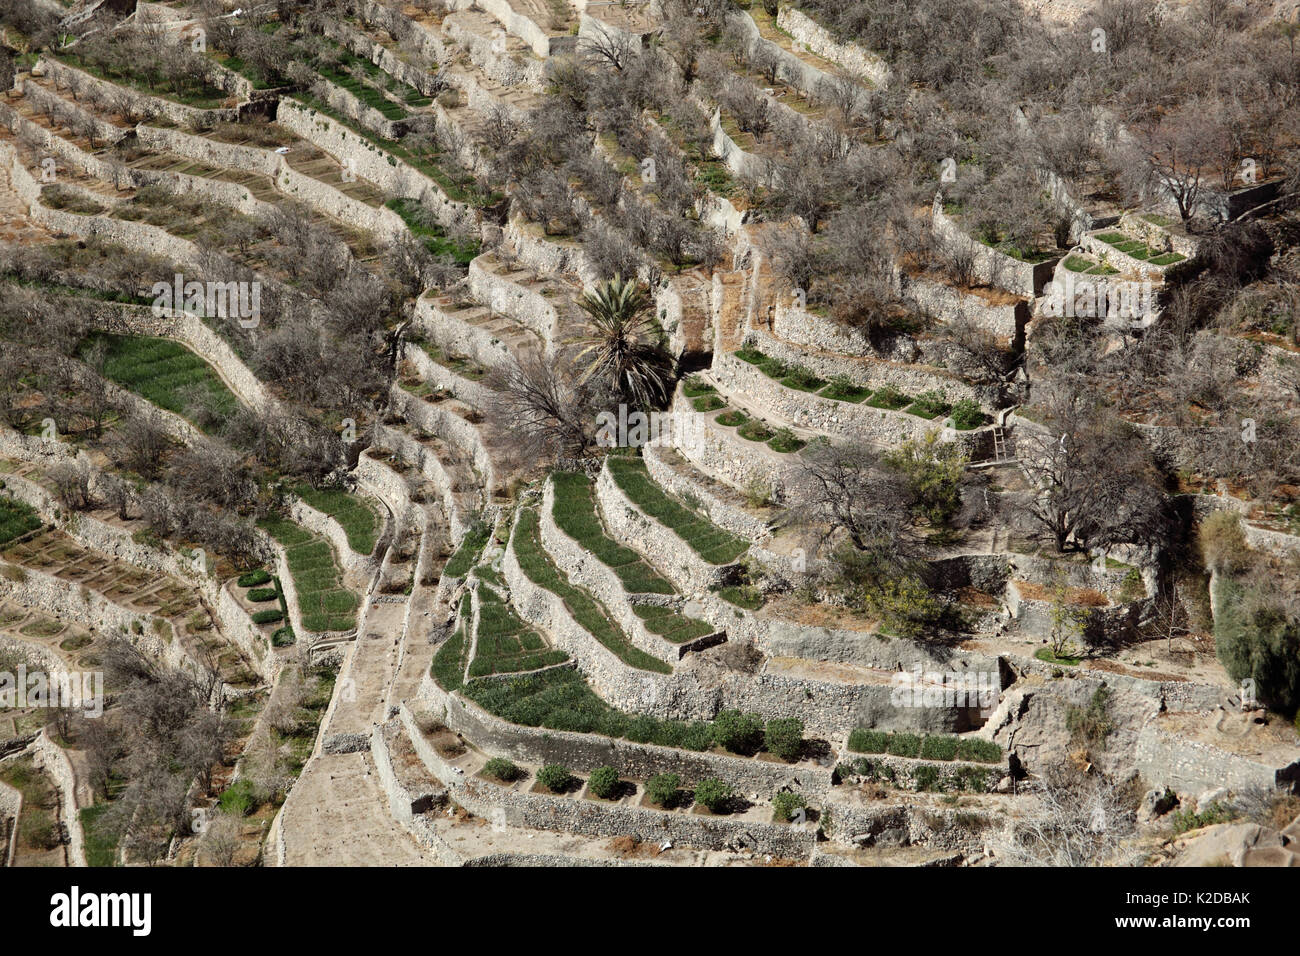 Campi terrazzati con giardini di rose, una popolare località turistica nel mourntains, Oman, Febbraio Foto Stock